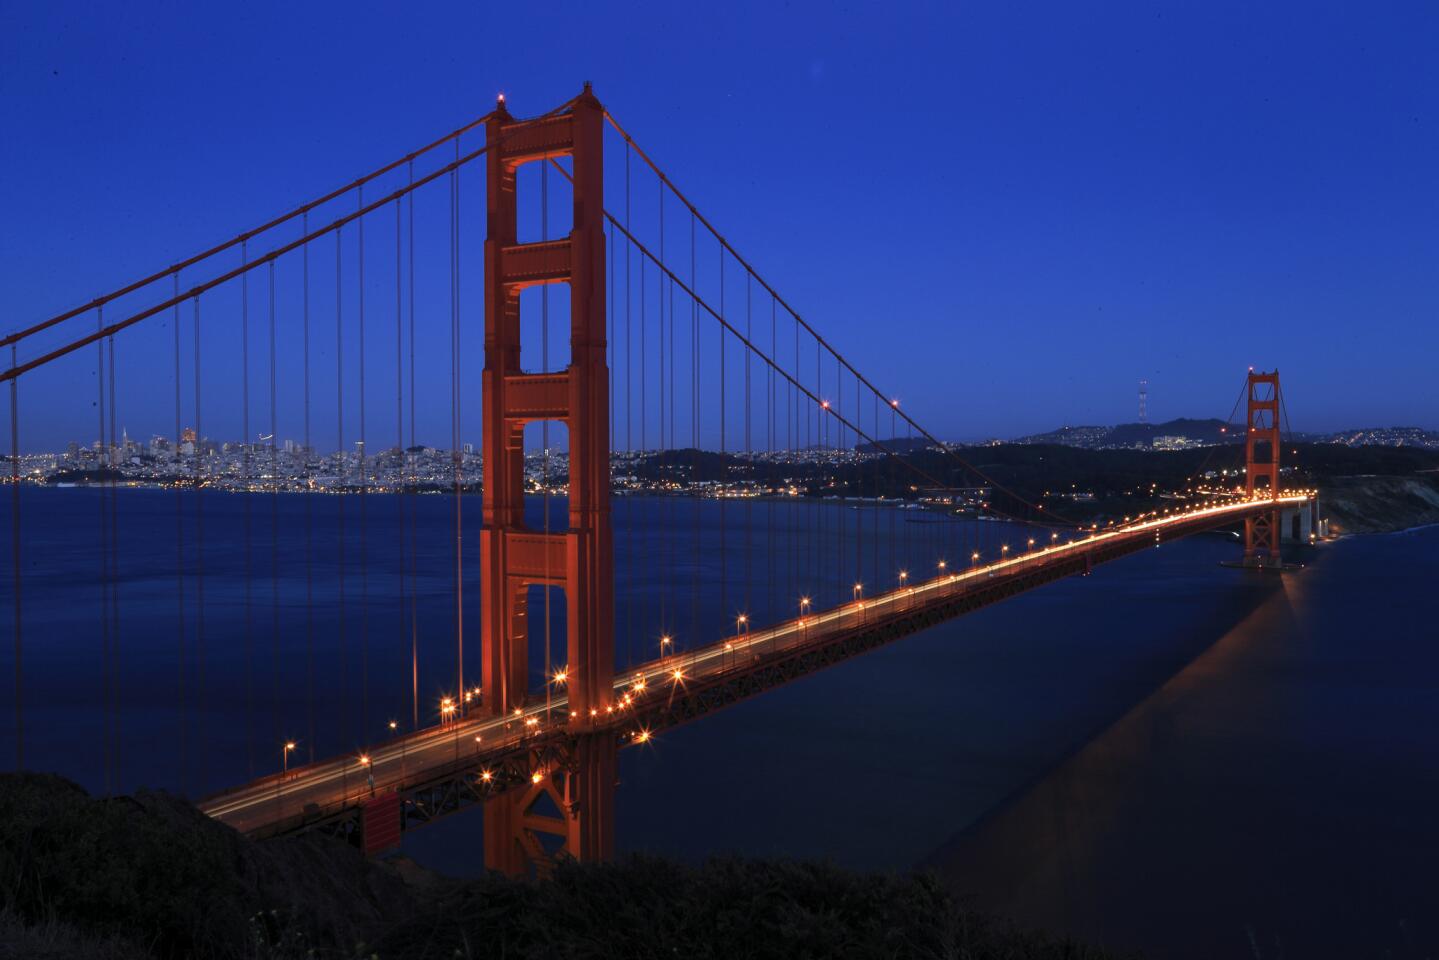 San Francisco: A perch above the bridge